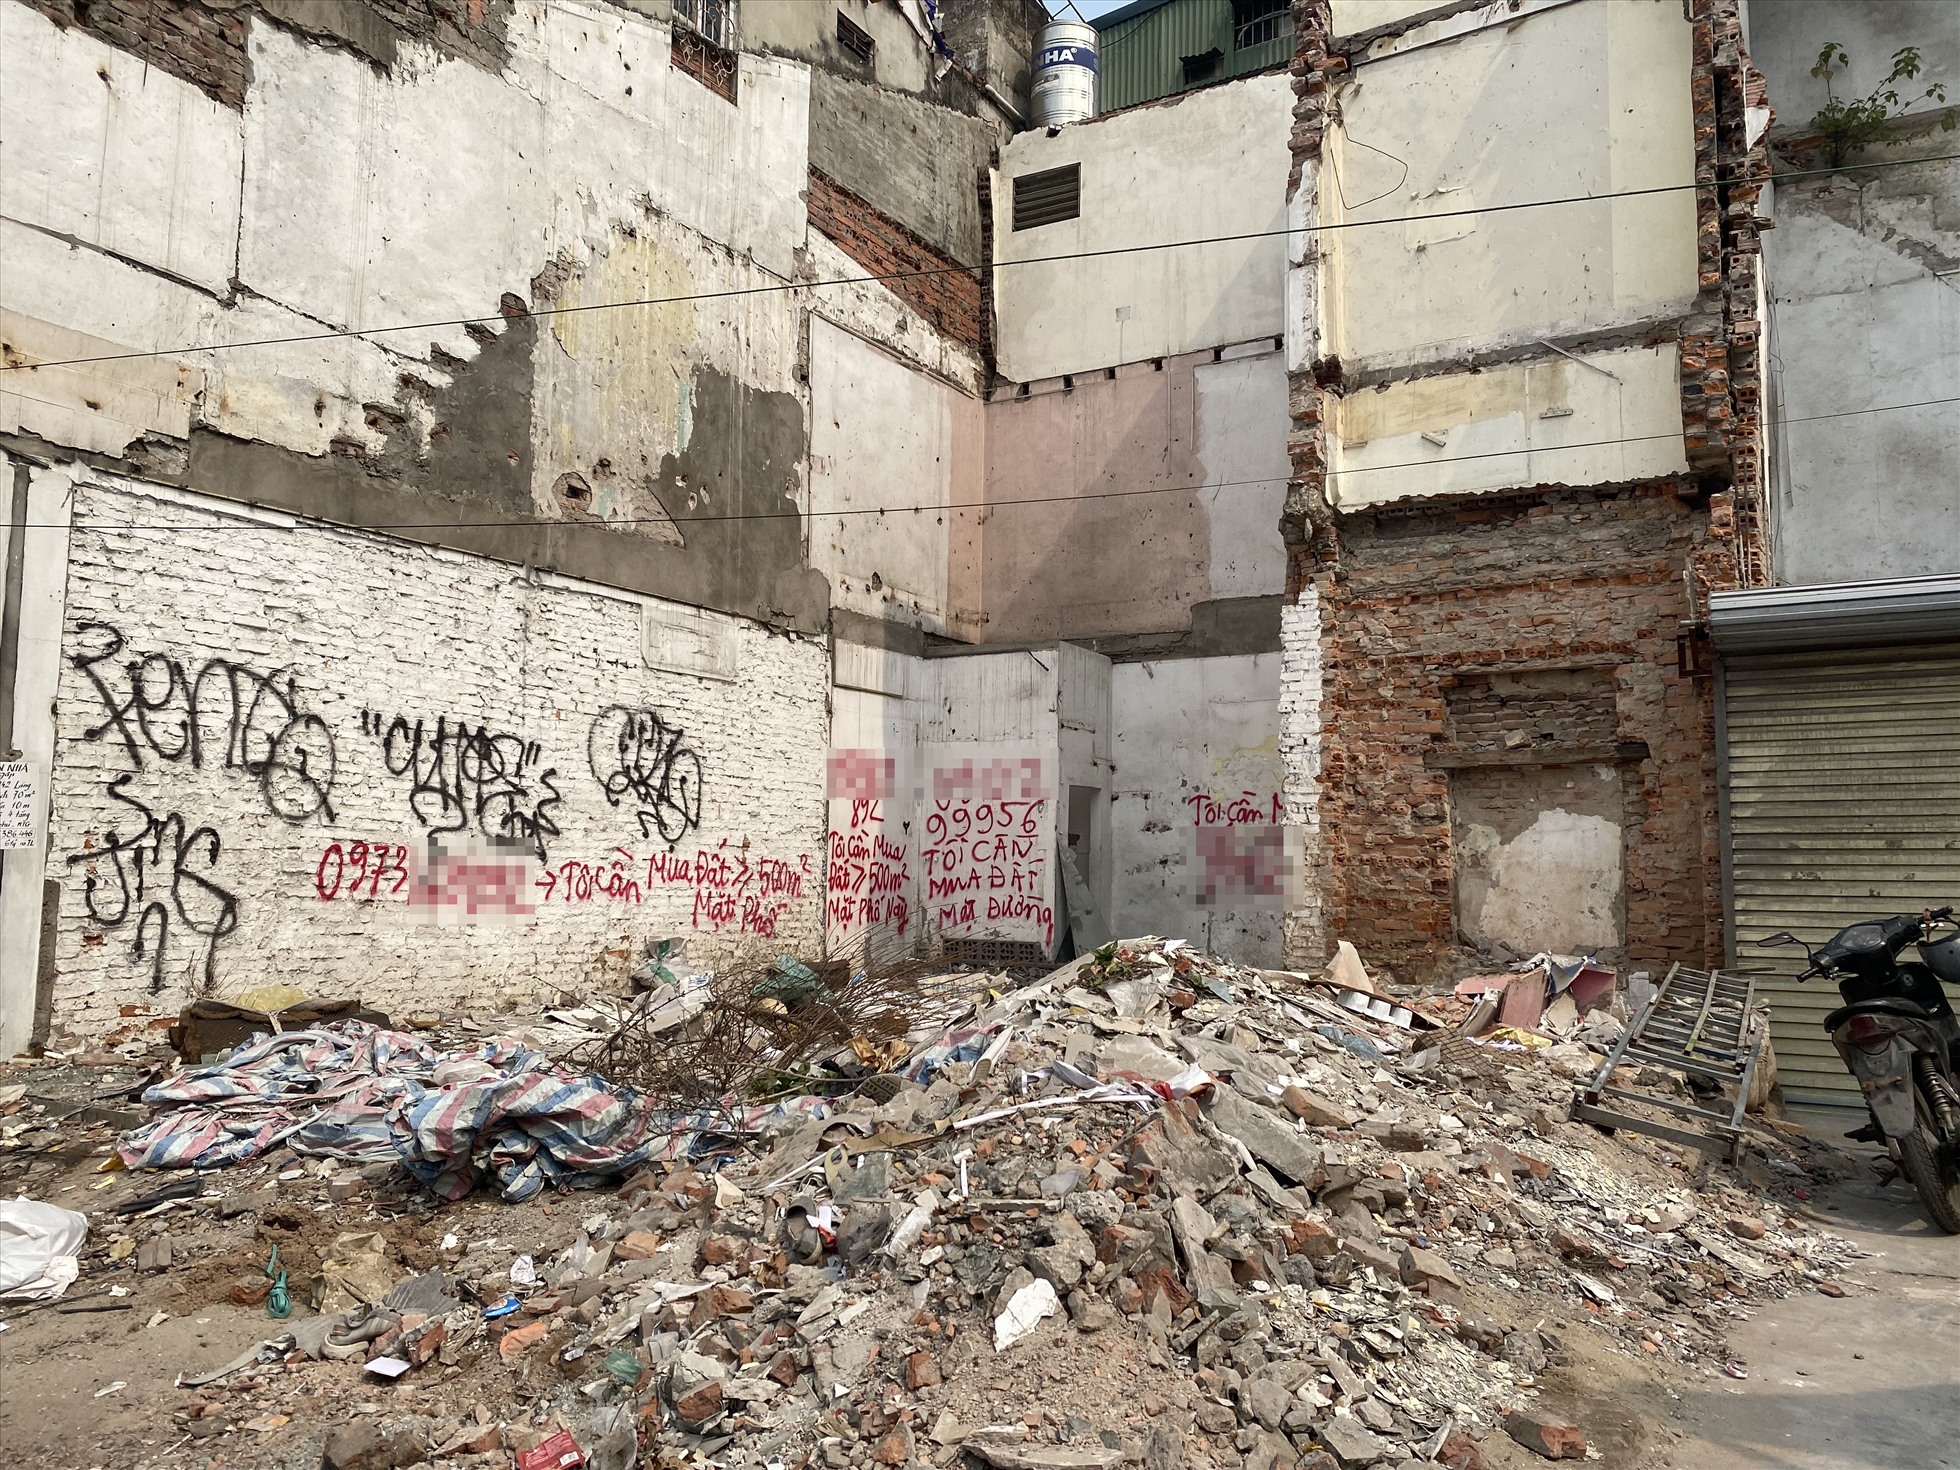 Trên tường của một số ngôi nhà vừa bị phá dỡ này xuất hiện dòng chữ “cần mua đất mặt phố này“. Ảnh: Vĩnh Hoàng